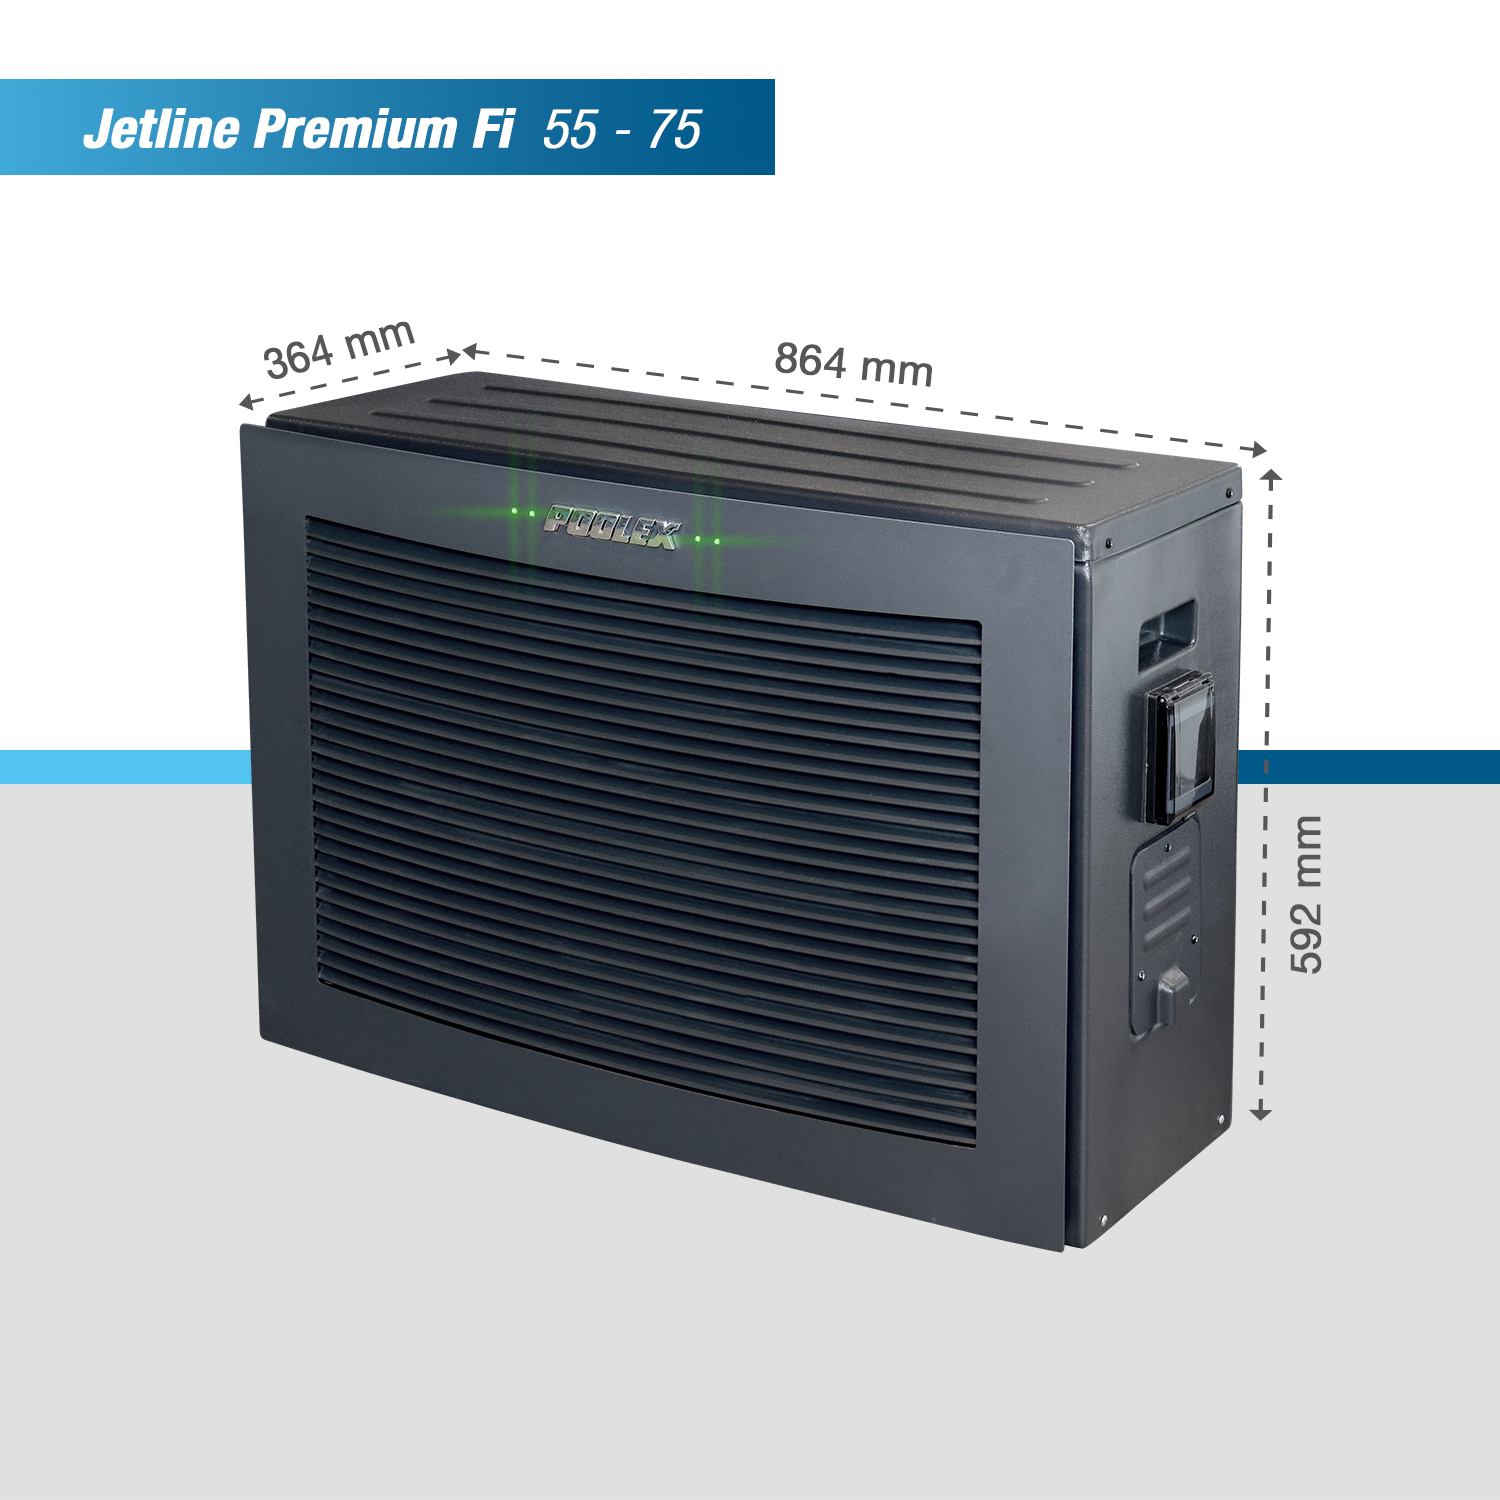 Poolex Jetline Premium Fi, dimensions petite